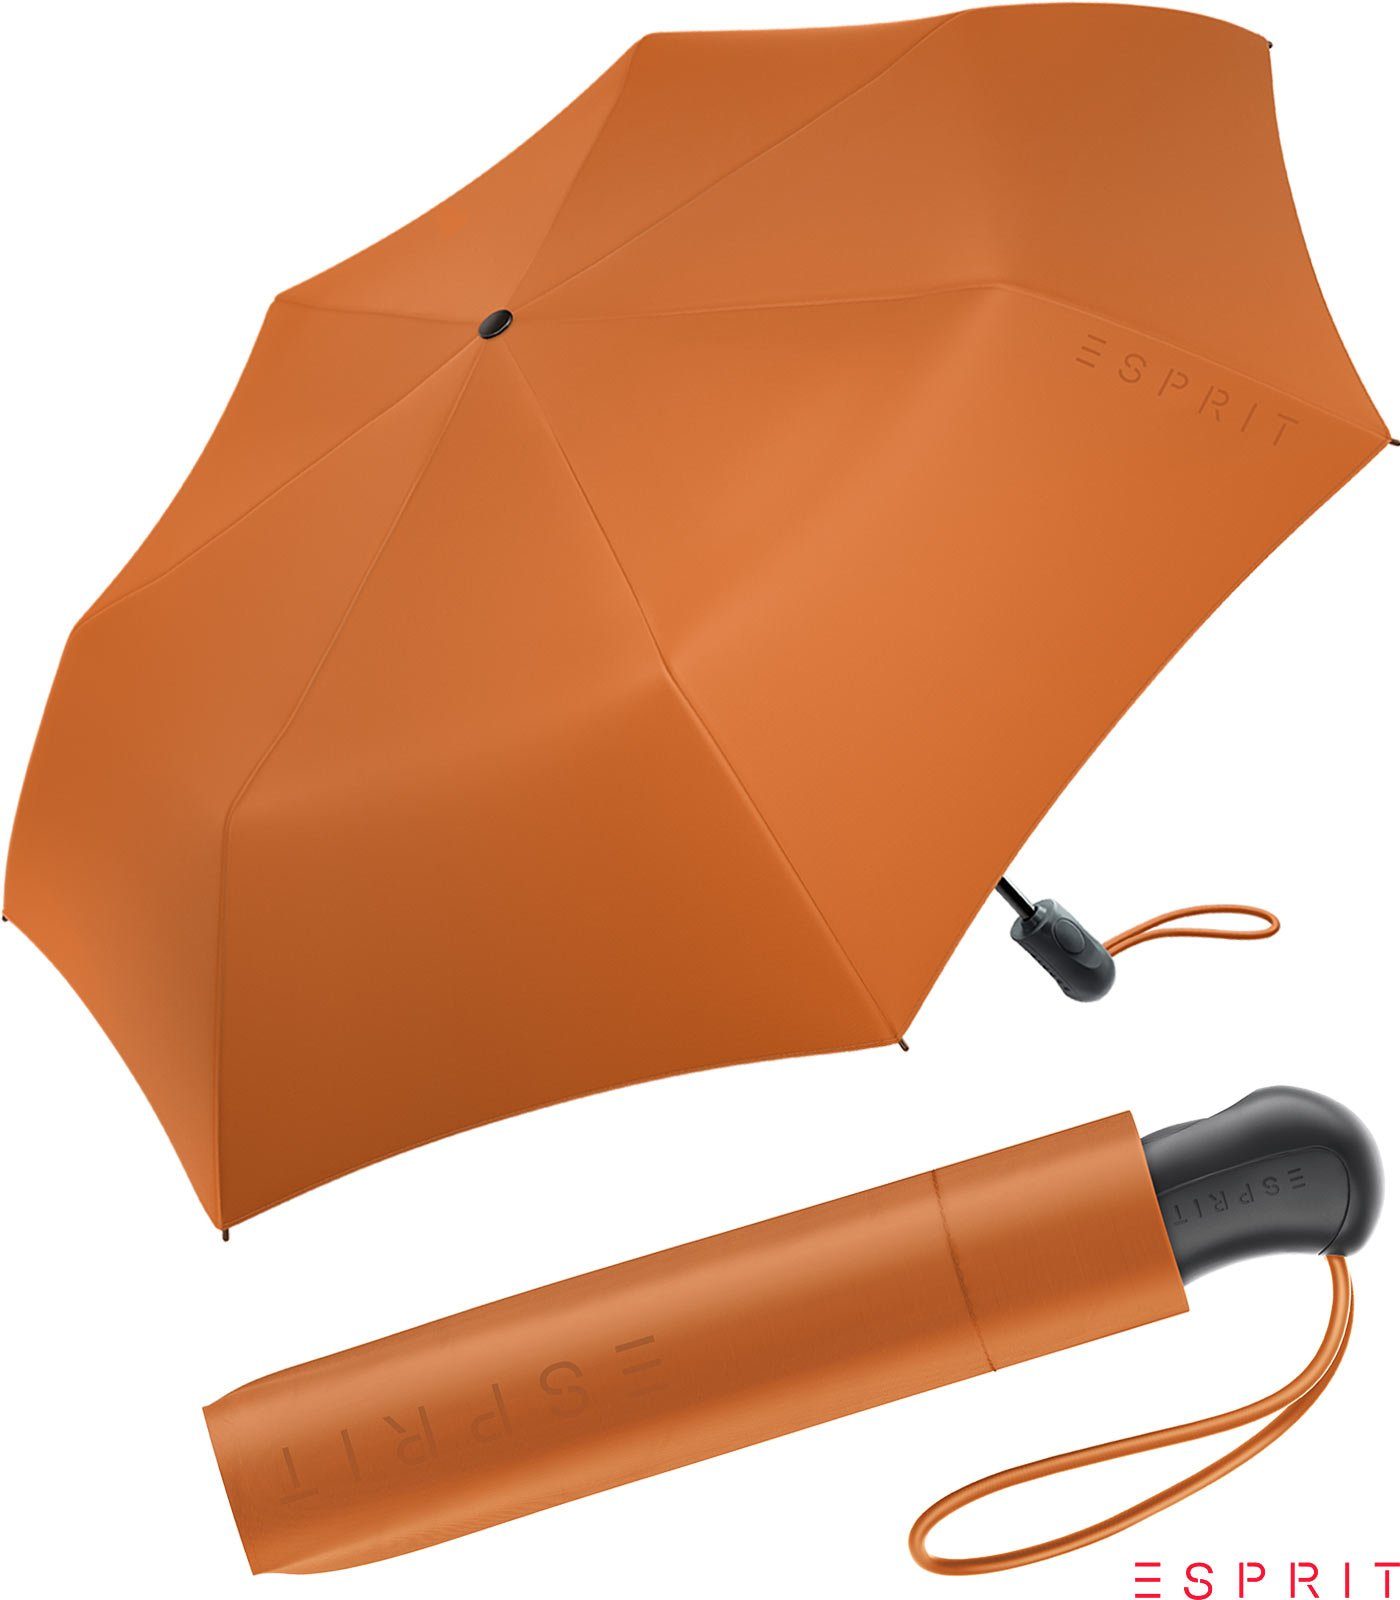 Esprit Taschenregenschirm Damen Easymatic Light Auf-Zu Automatik HW 2022 - burnt orange, stabil, praktisch, in den neuen Trendfarben